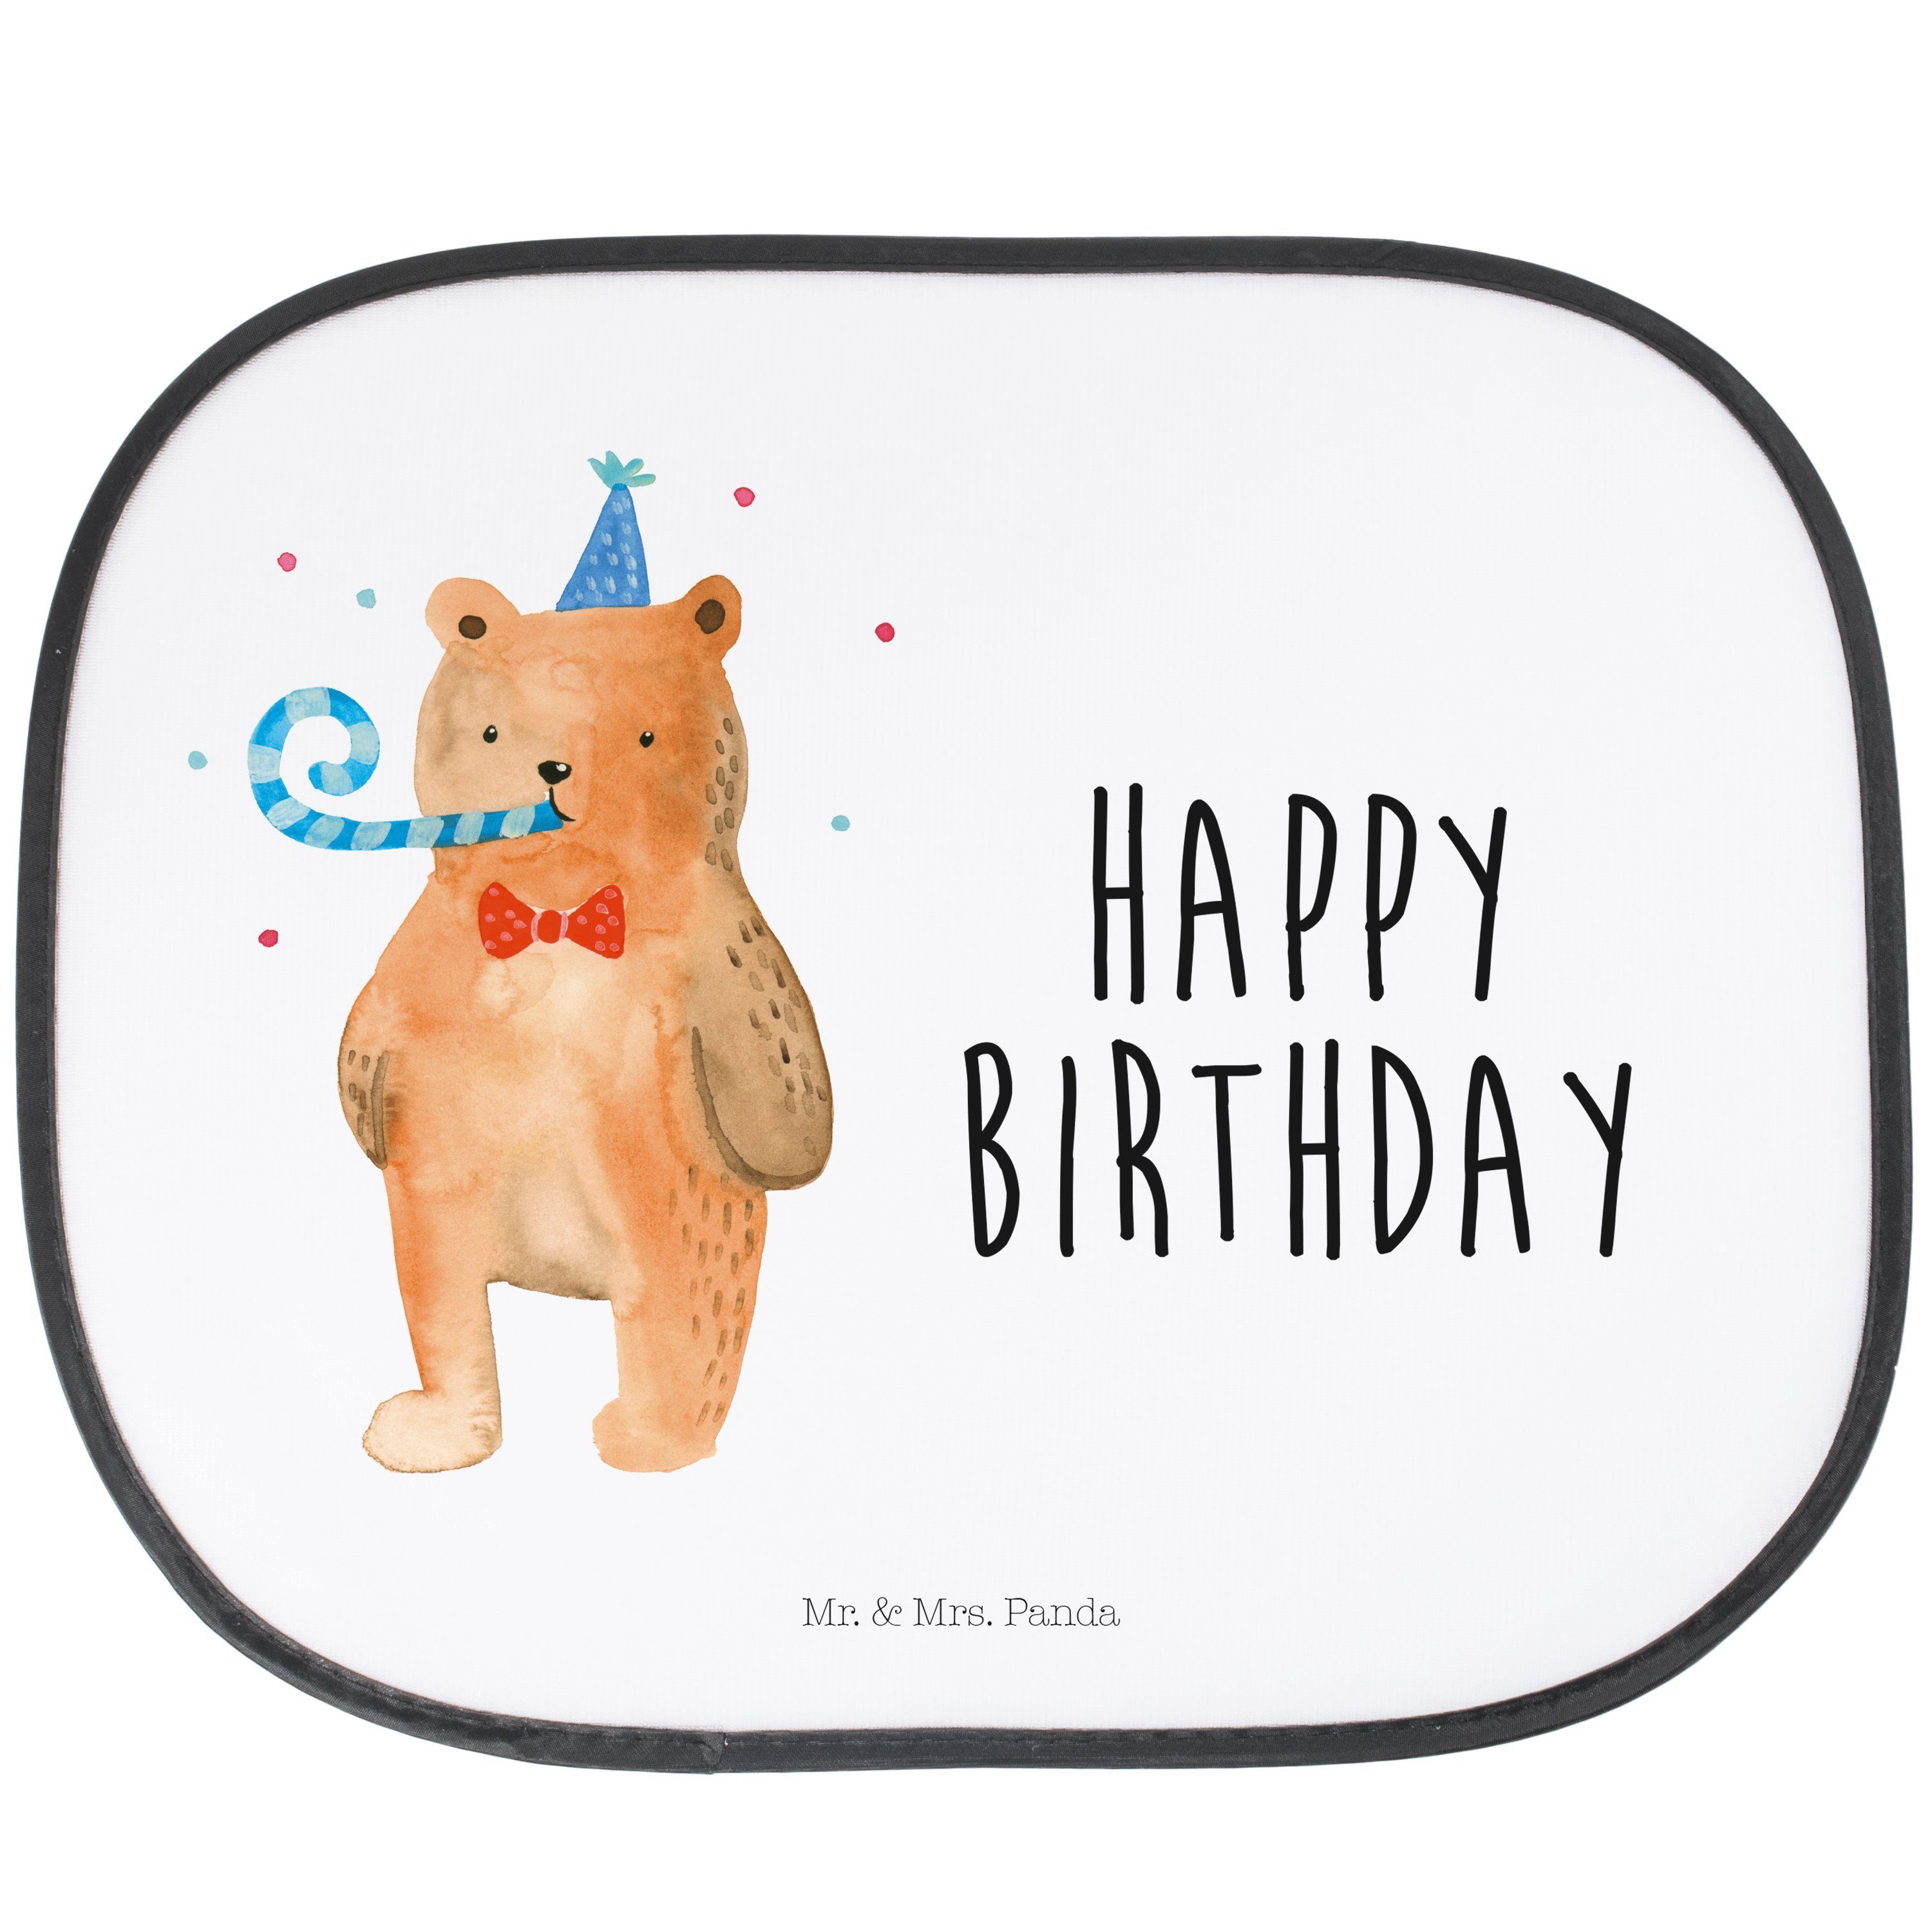 Sonnenschutz Birthday Bär - Weiß - Geschenk, Sonnenschutz Baby, Happy Birthday, Te, Mr. & Mrs. Panda, Seidenmatt